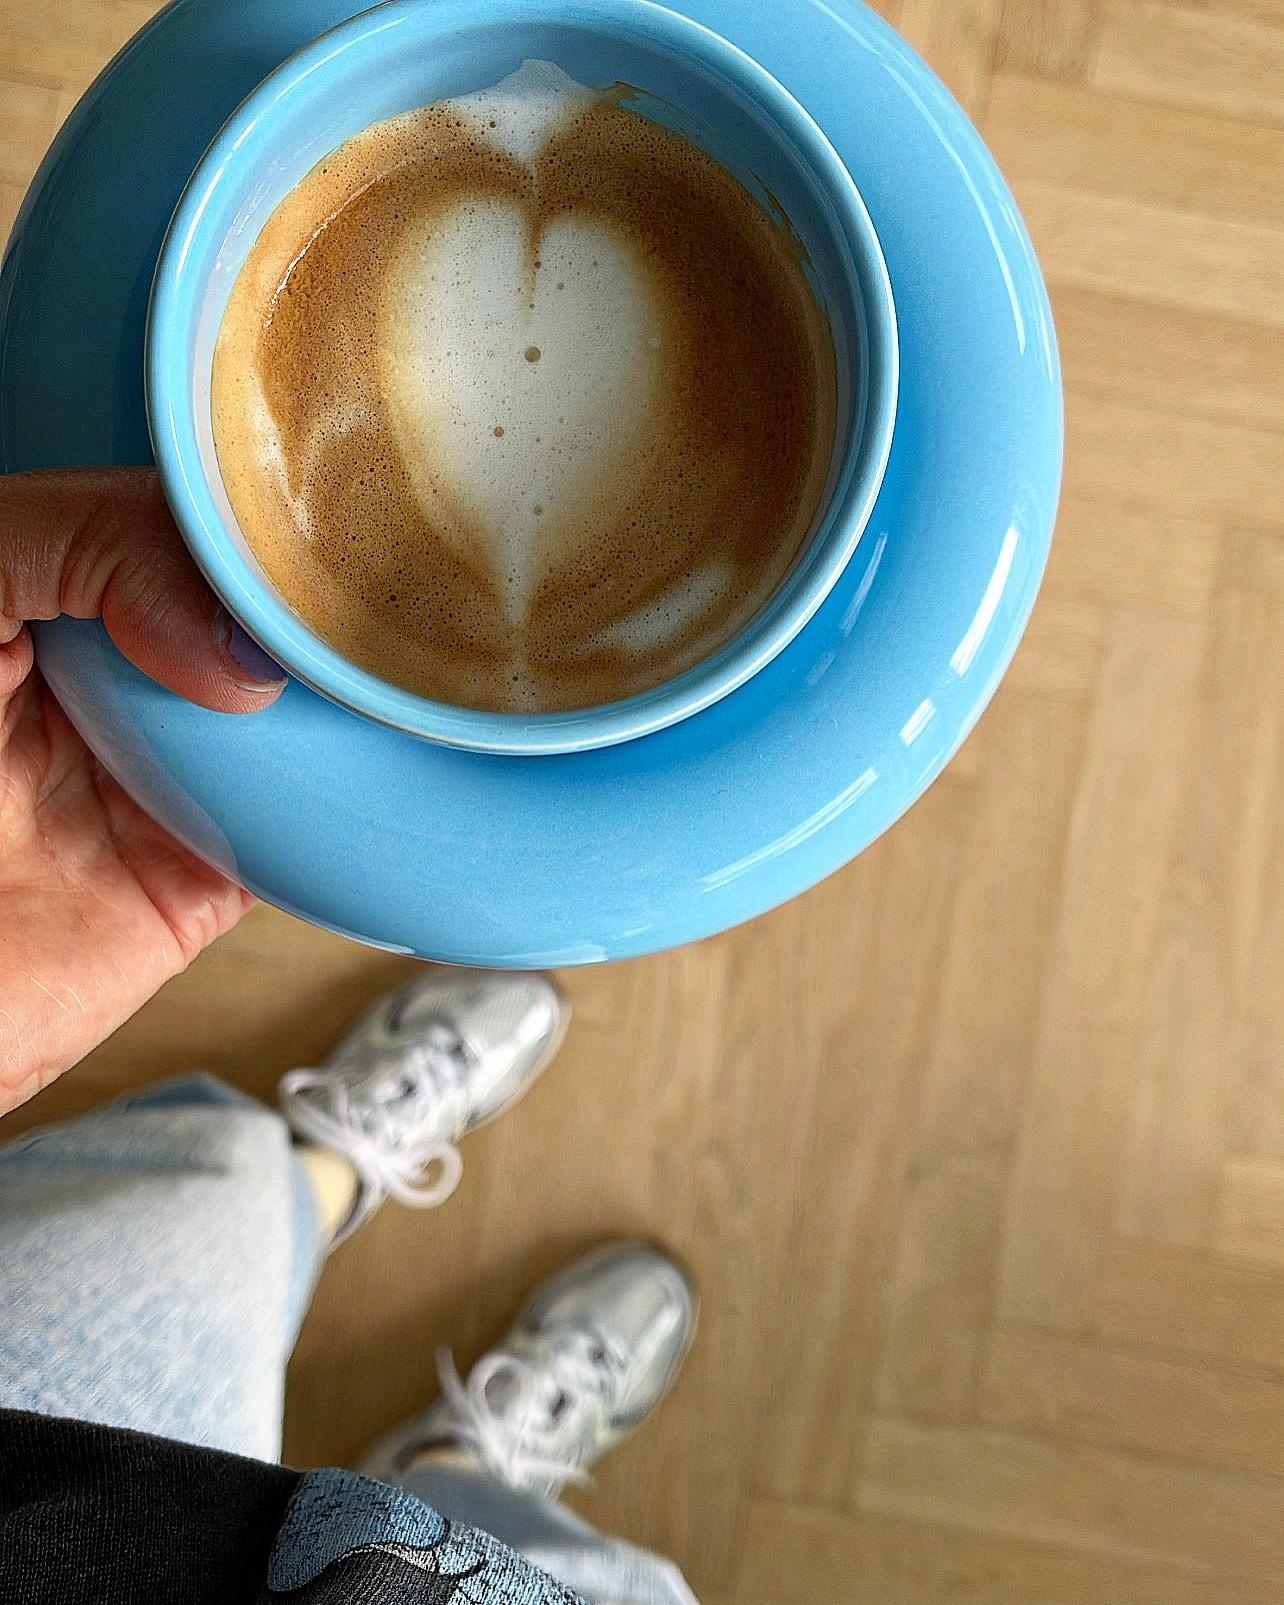 So langsam klappt’s auch mit den 💙
#tassenliebe #kaffe #keramik